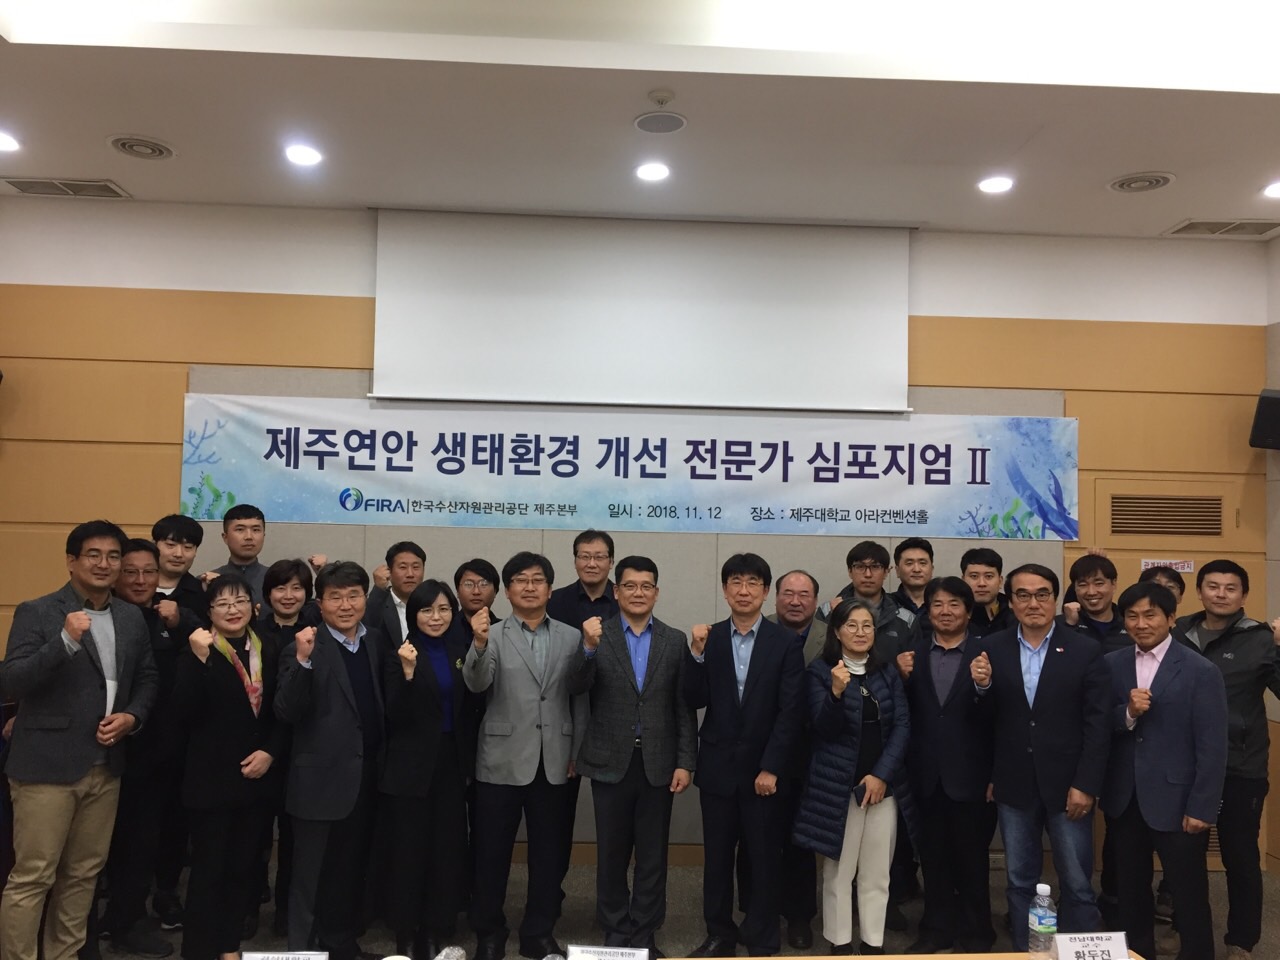 [18.11.12.] 제주본부, 제주연안 생태환경개선 전문가 심포지엄 II 개최